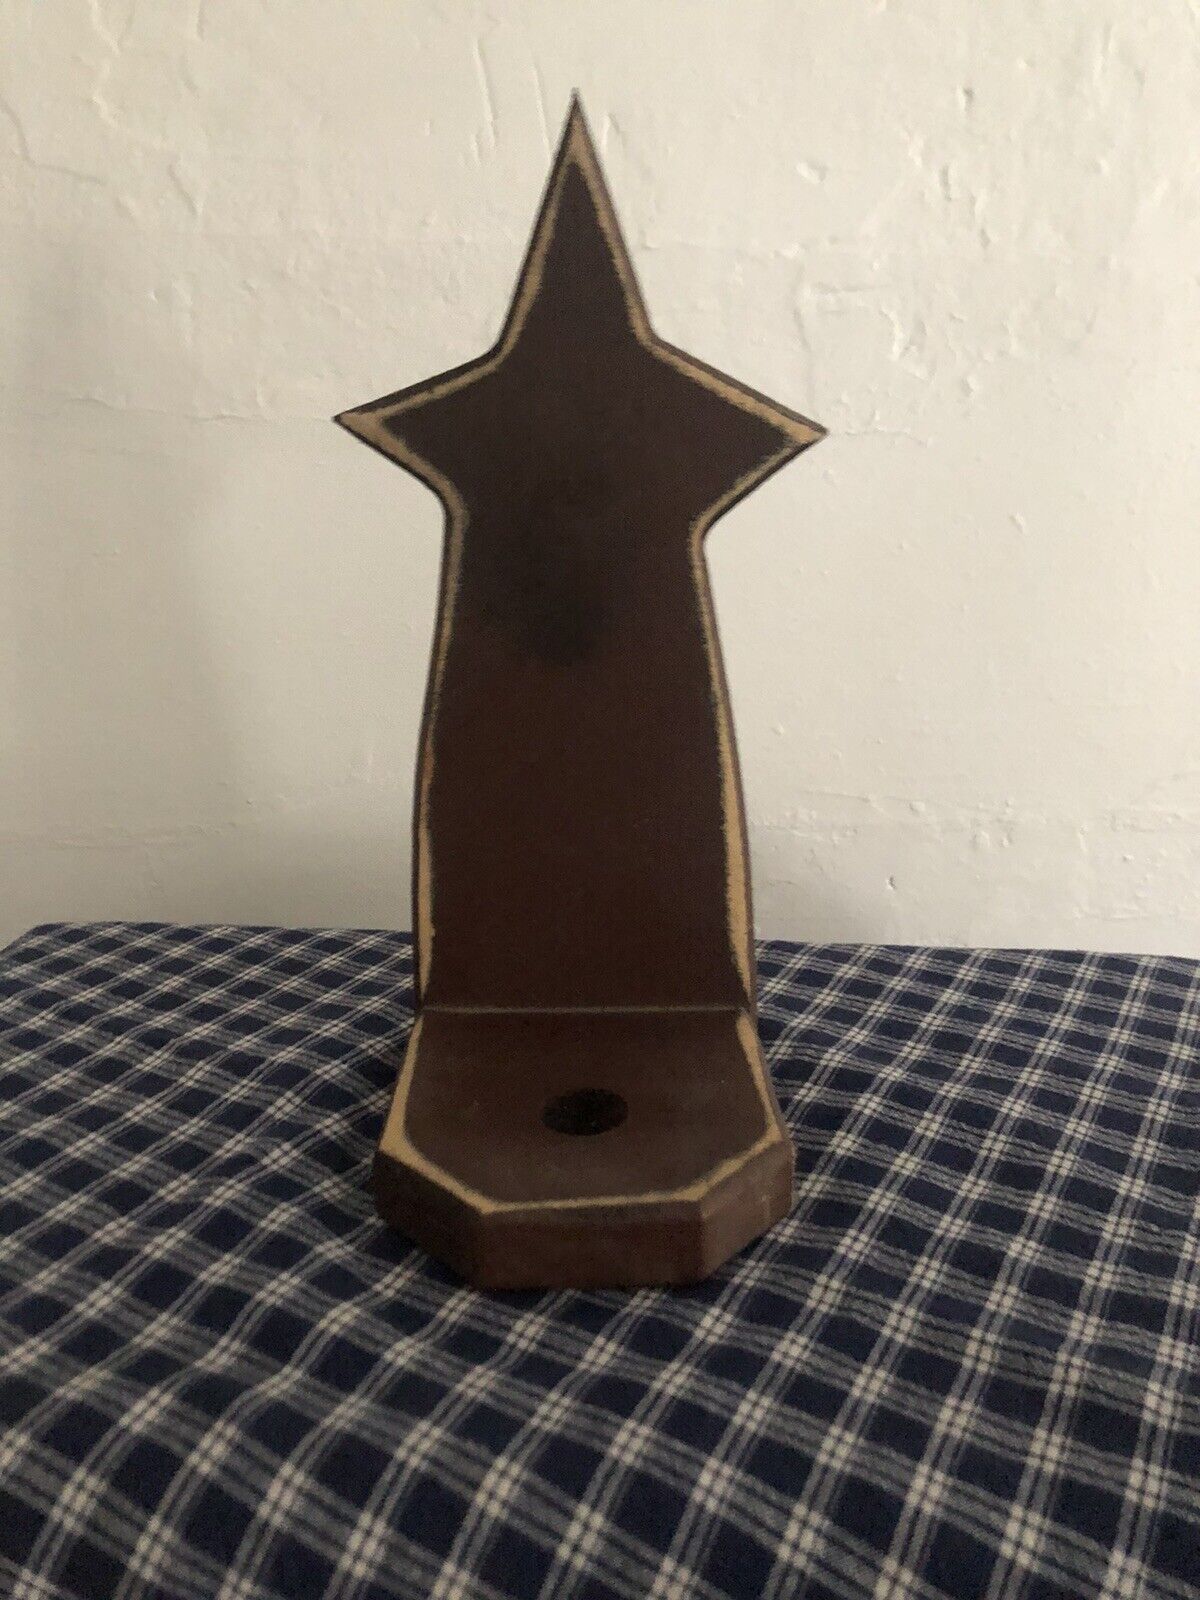 primitive star candle holder